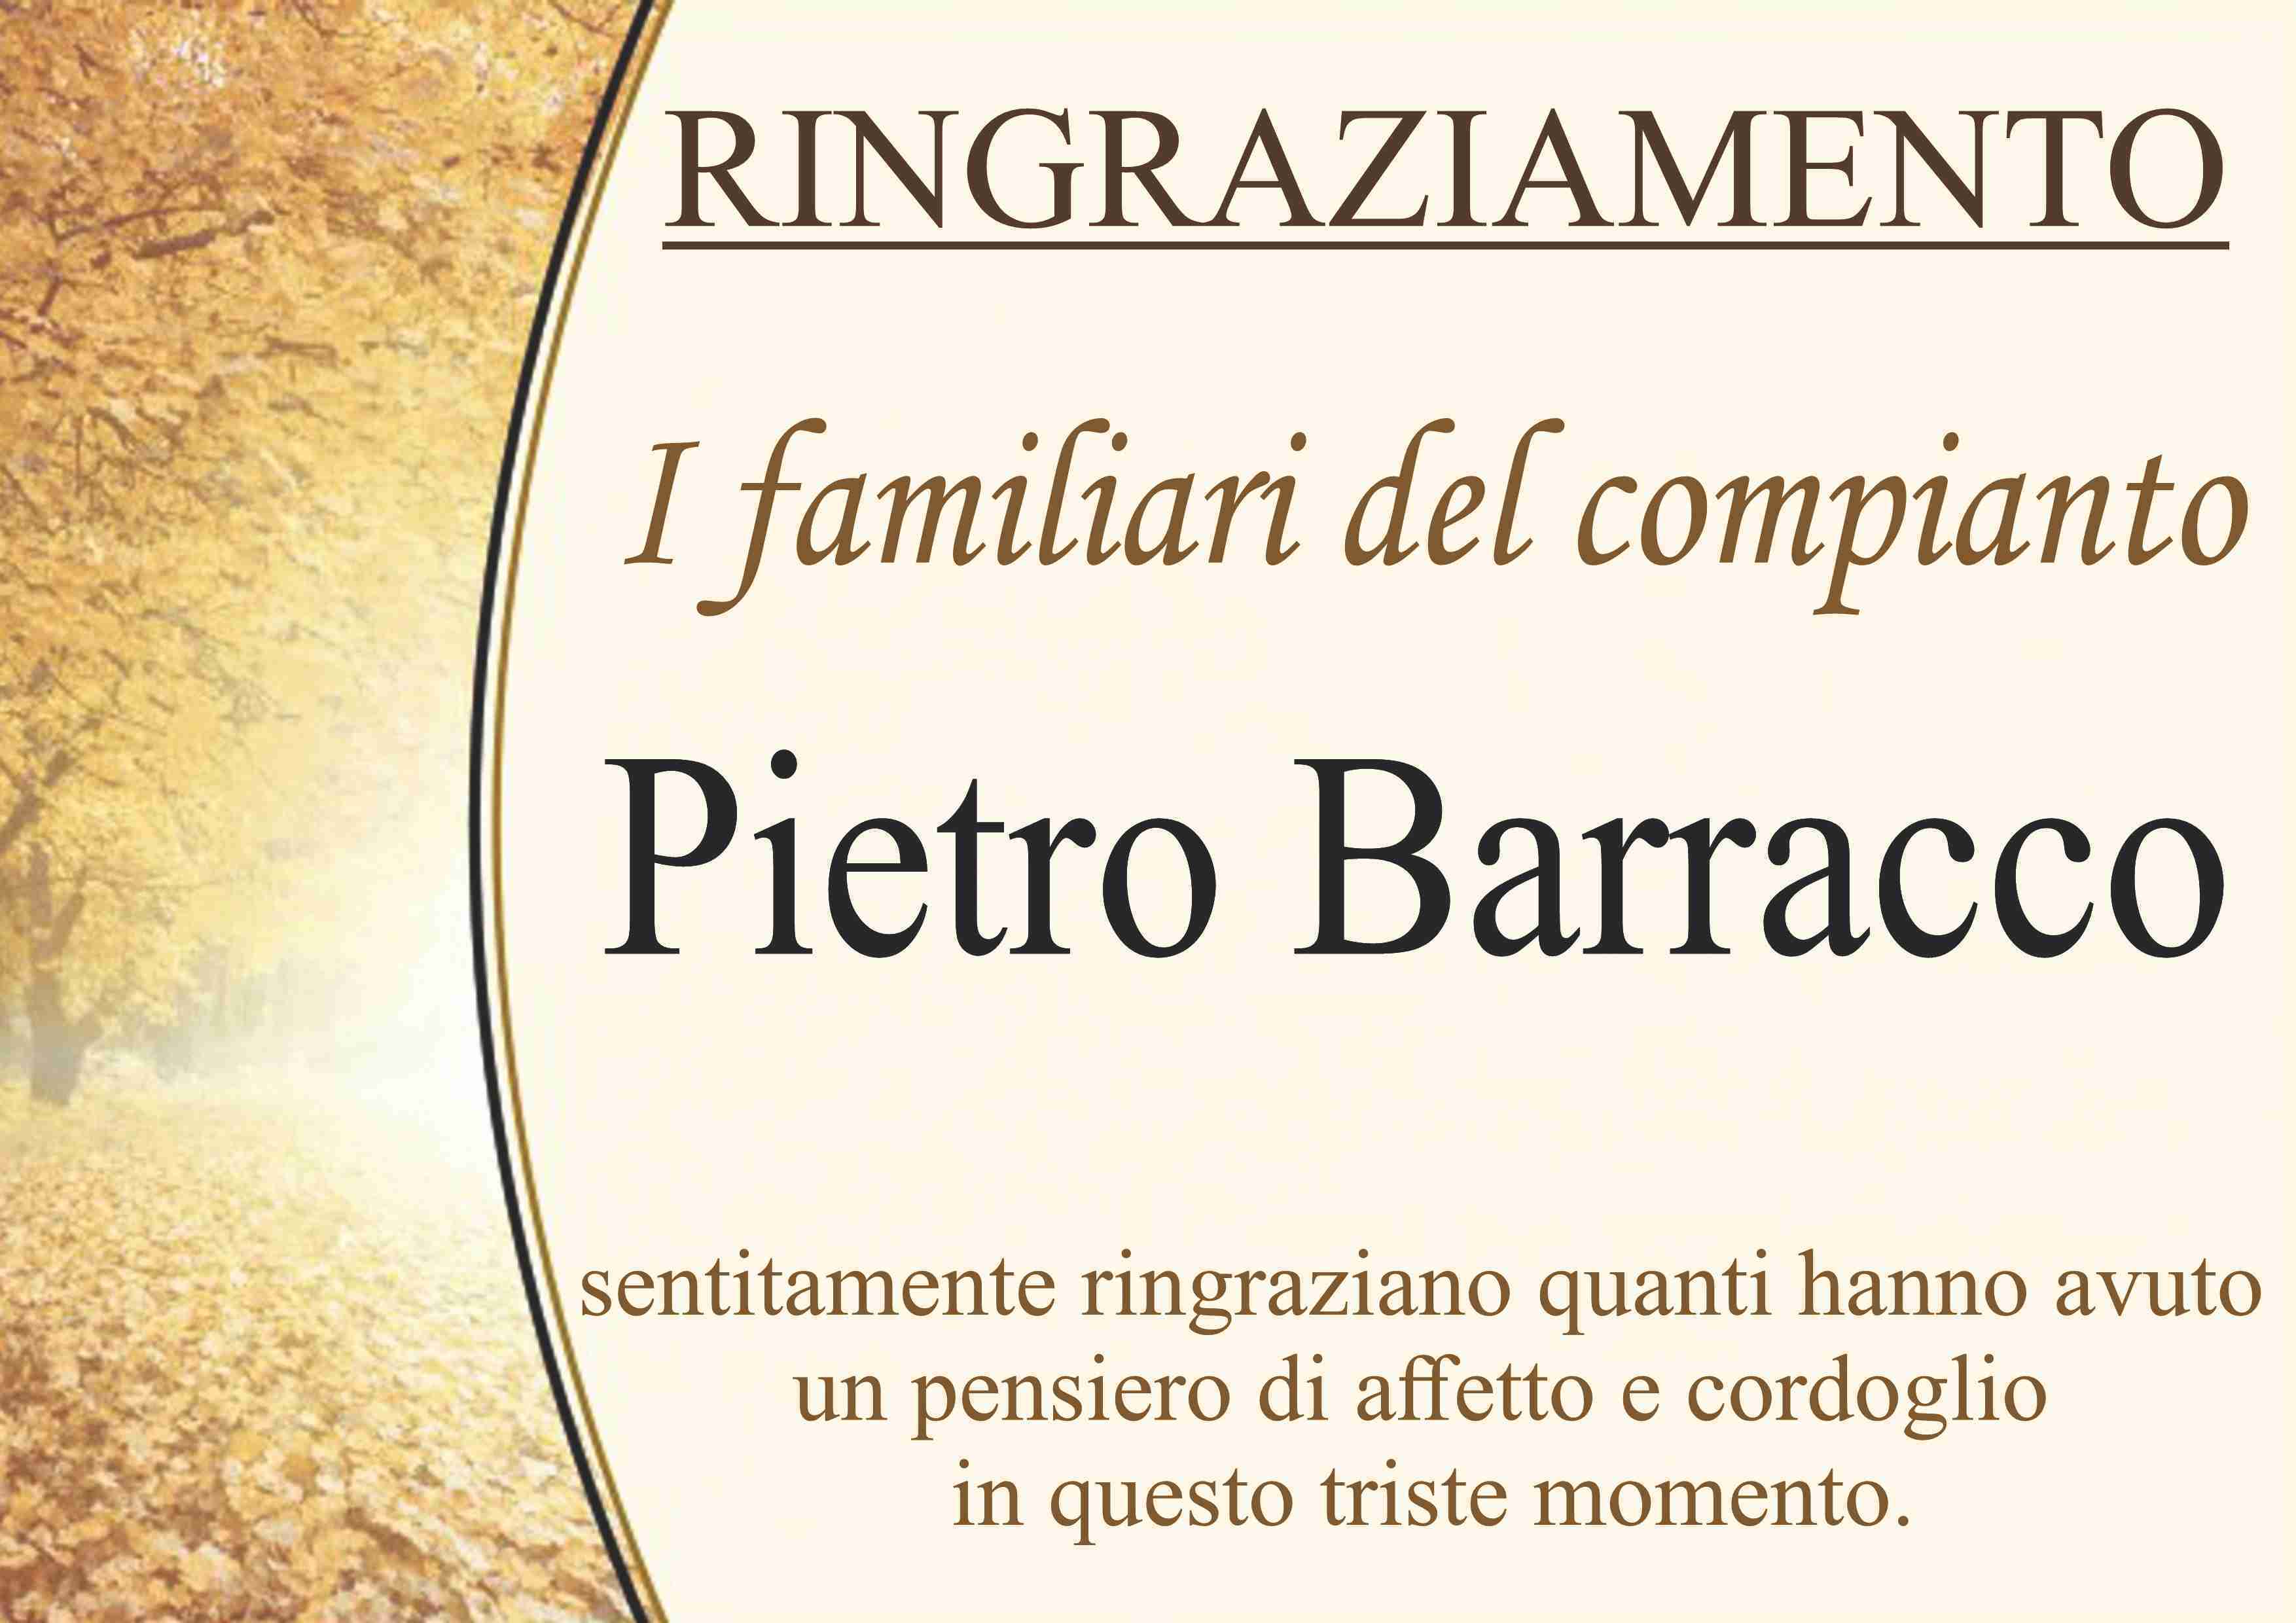 Pietro Barracco